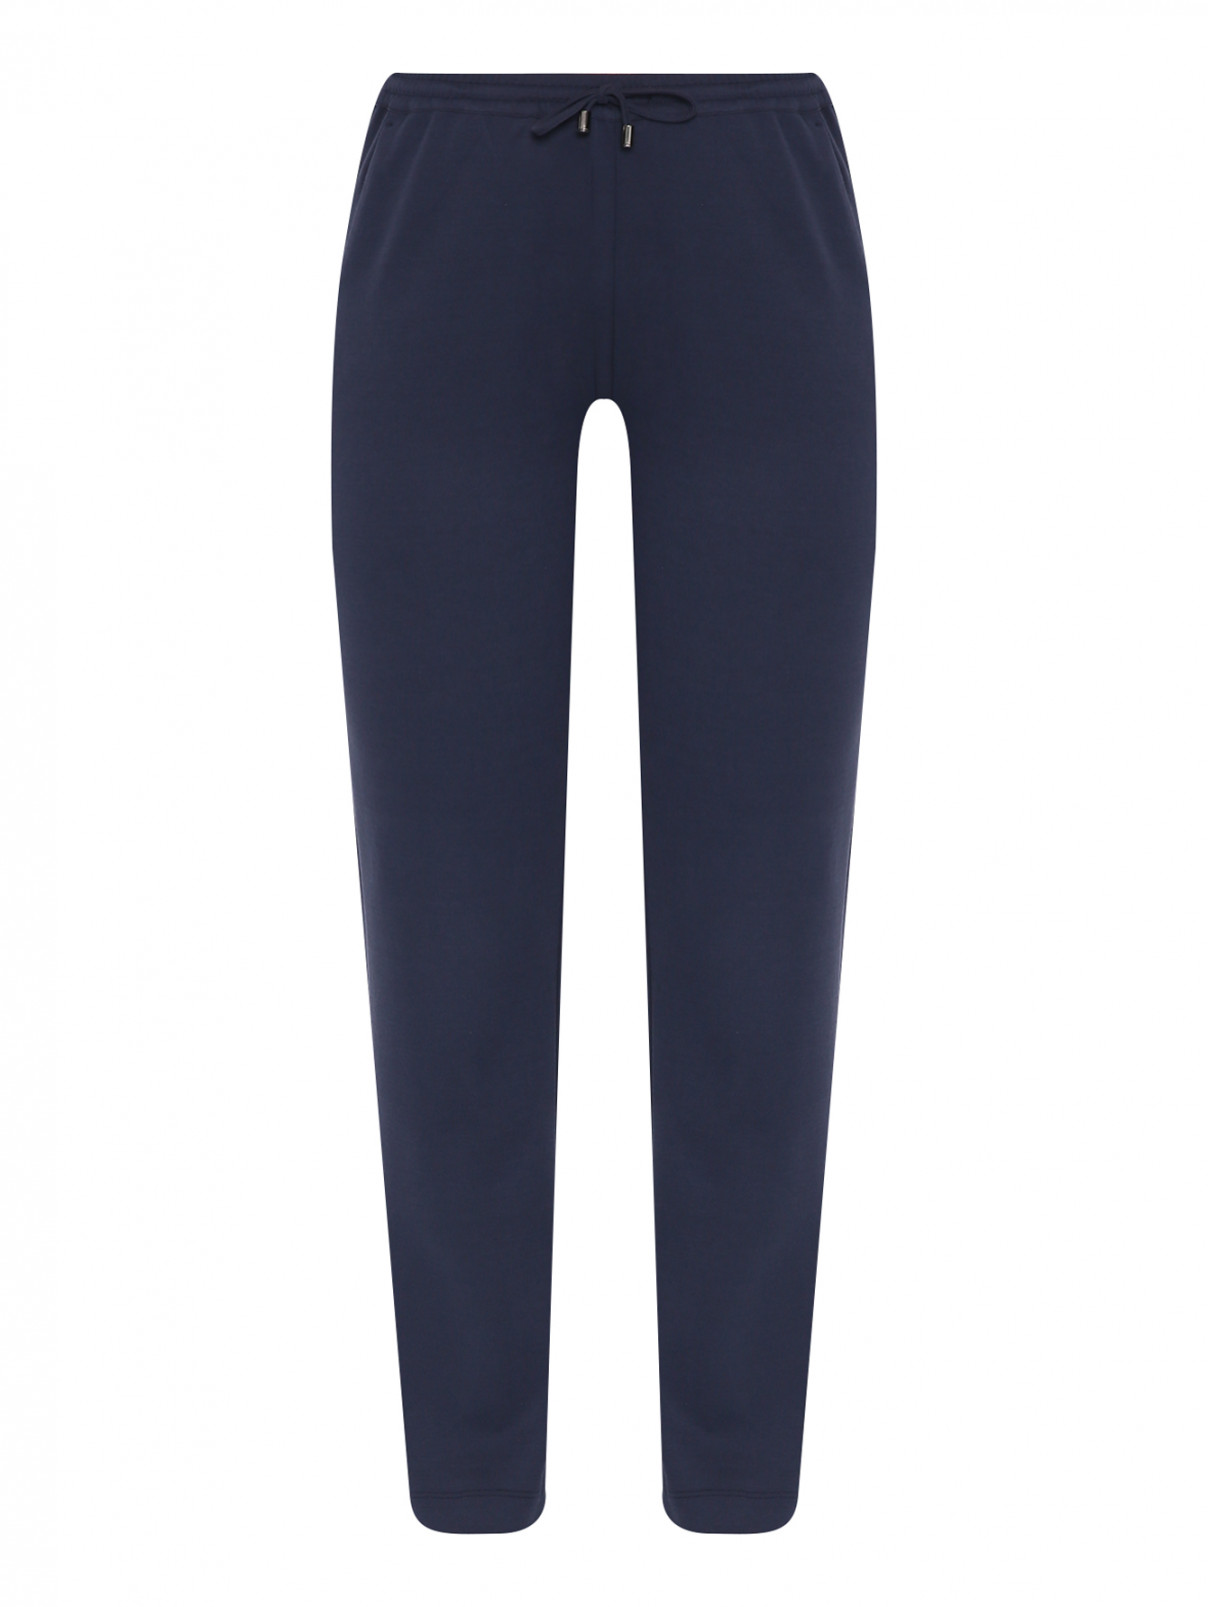 Трикотажные брюки на резинке с карманами Marina Rinaldi  –  Общий вид  – Цвет:  Синий